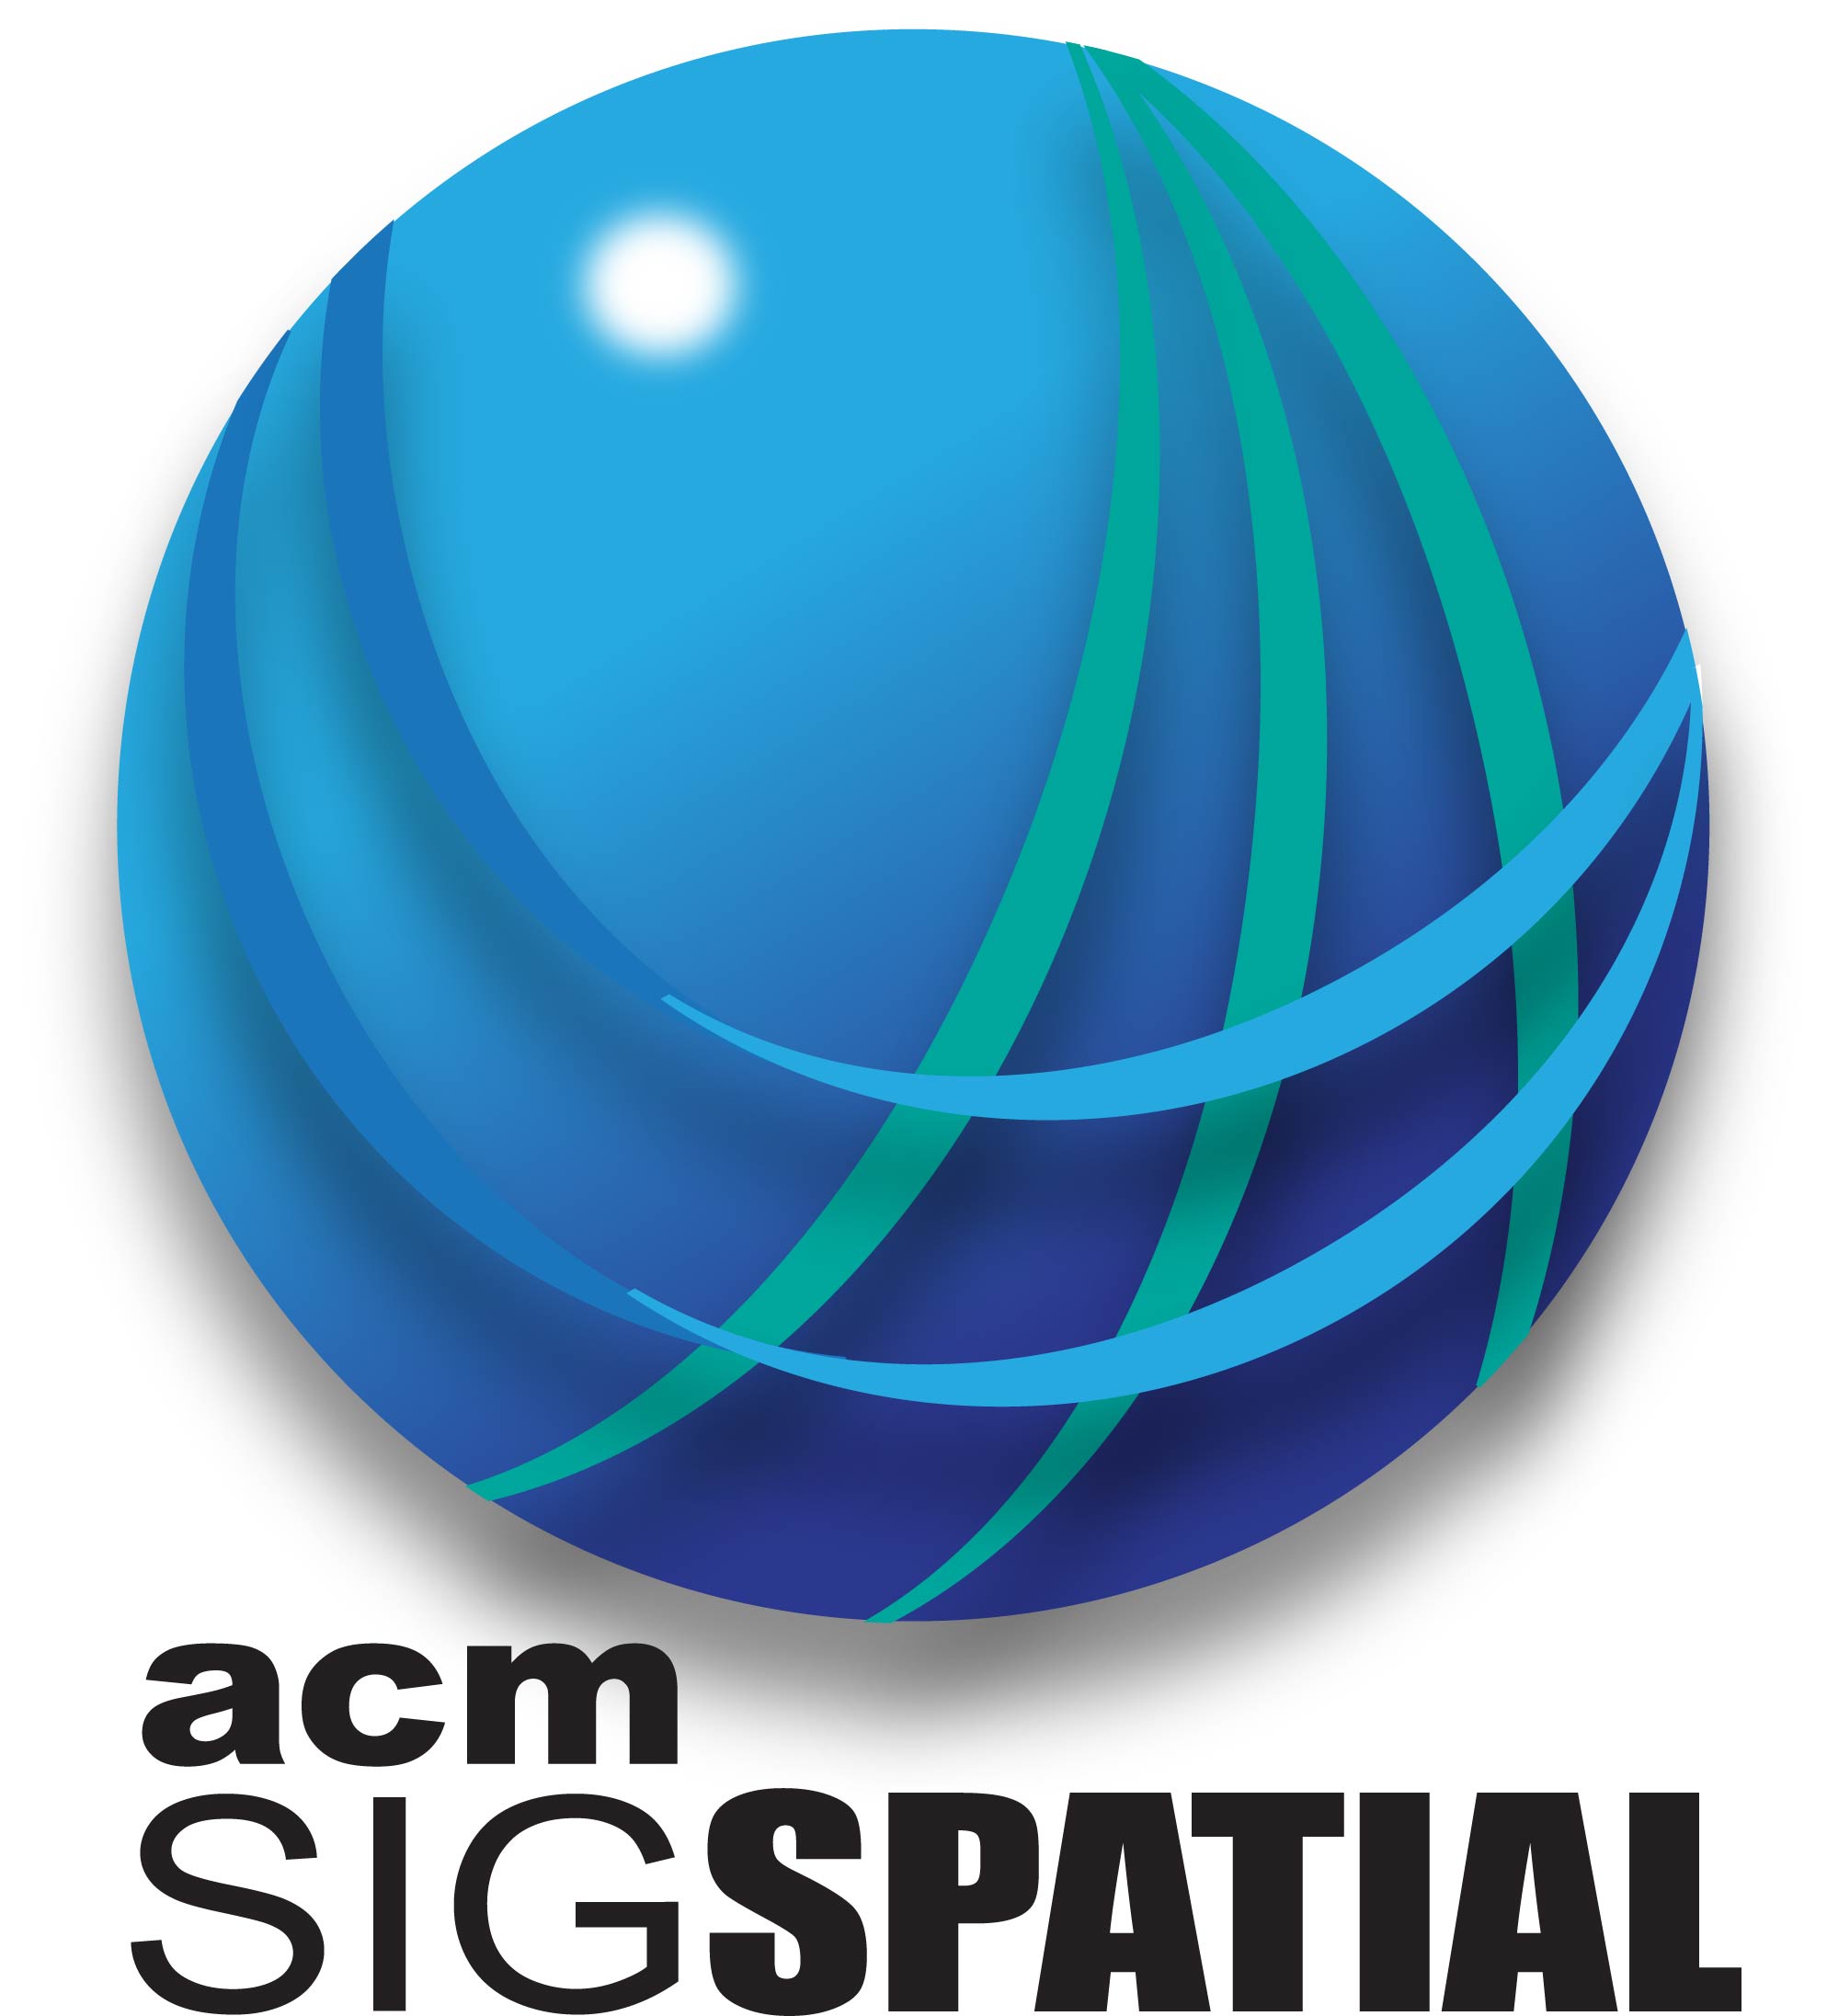 ACM SIGSPATIAL LOGO